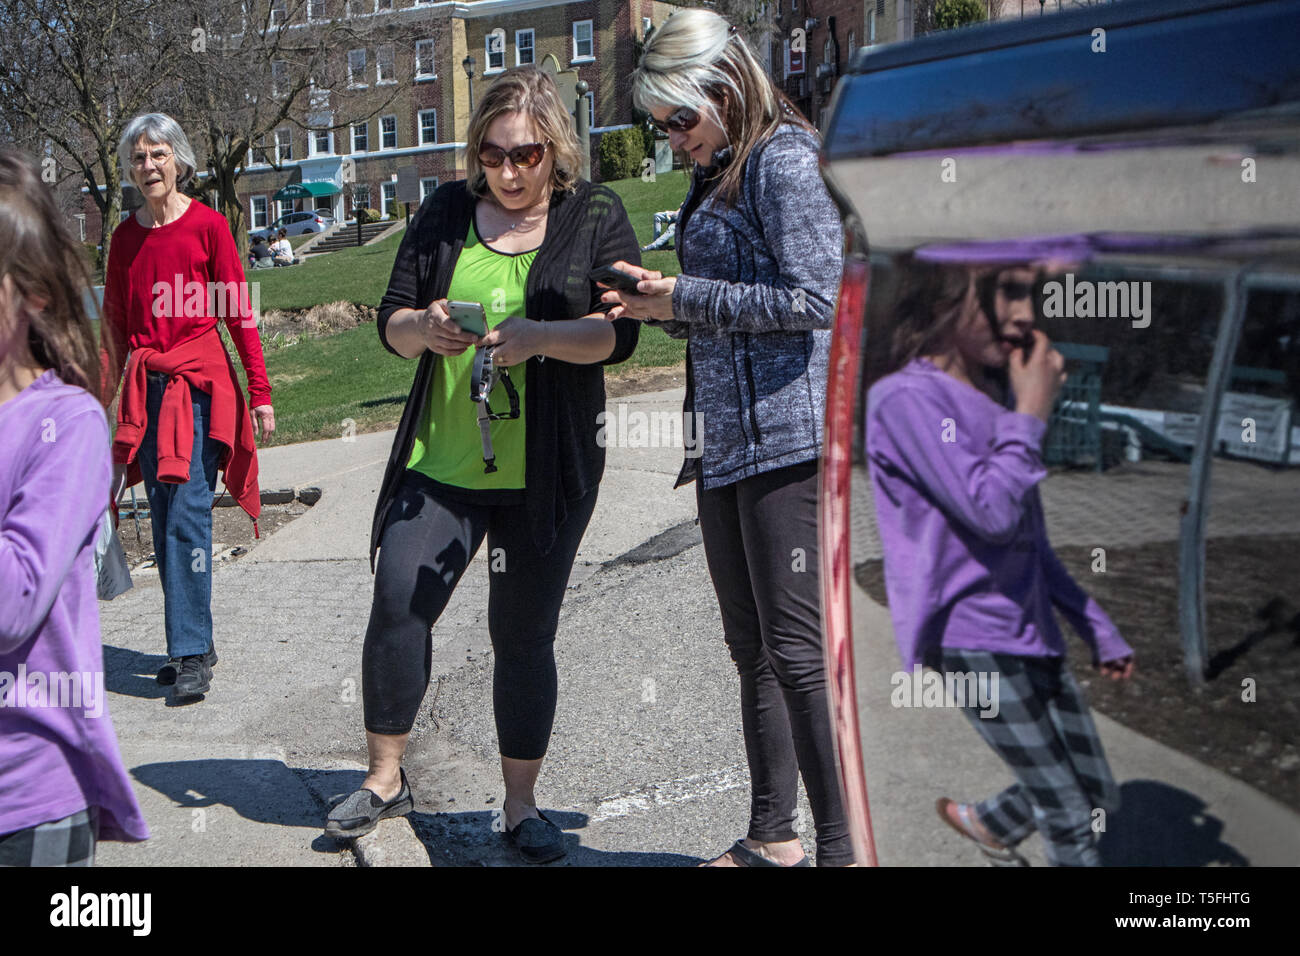 Zwei Frauen ihre Zelle Consult, ein Mädchen und ihre Silhouette spiegelt sich in der Farbe von einem geparkten Auto. Stockfoto